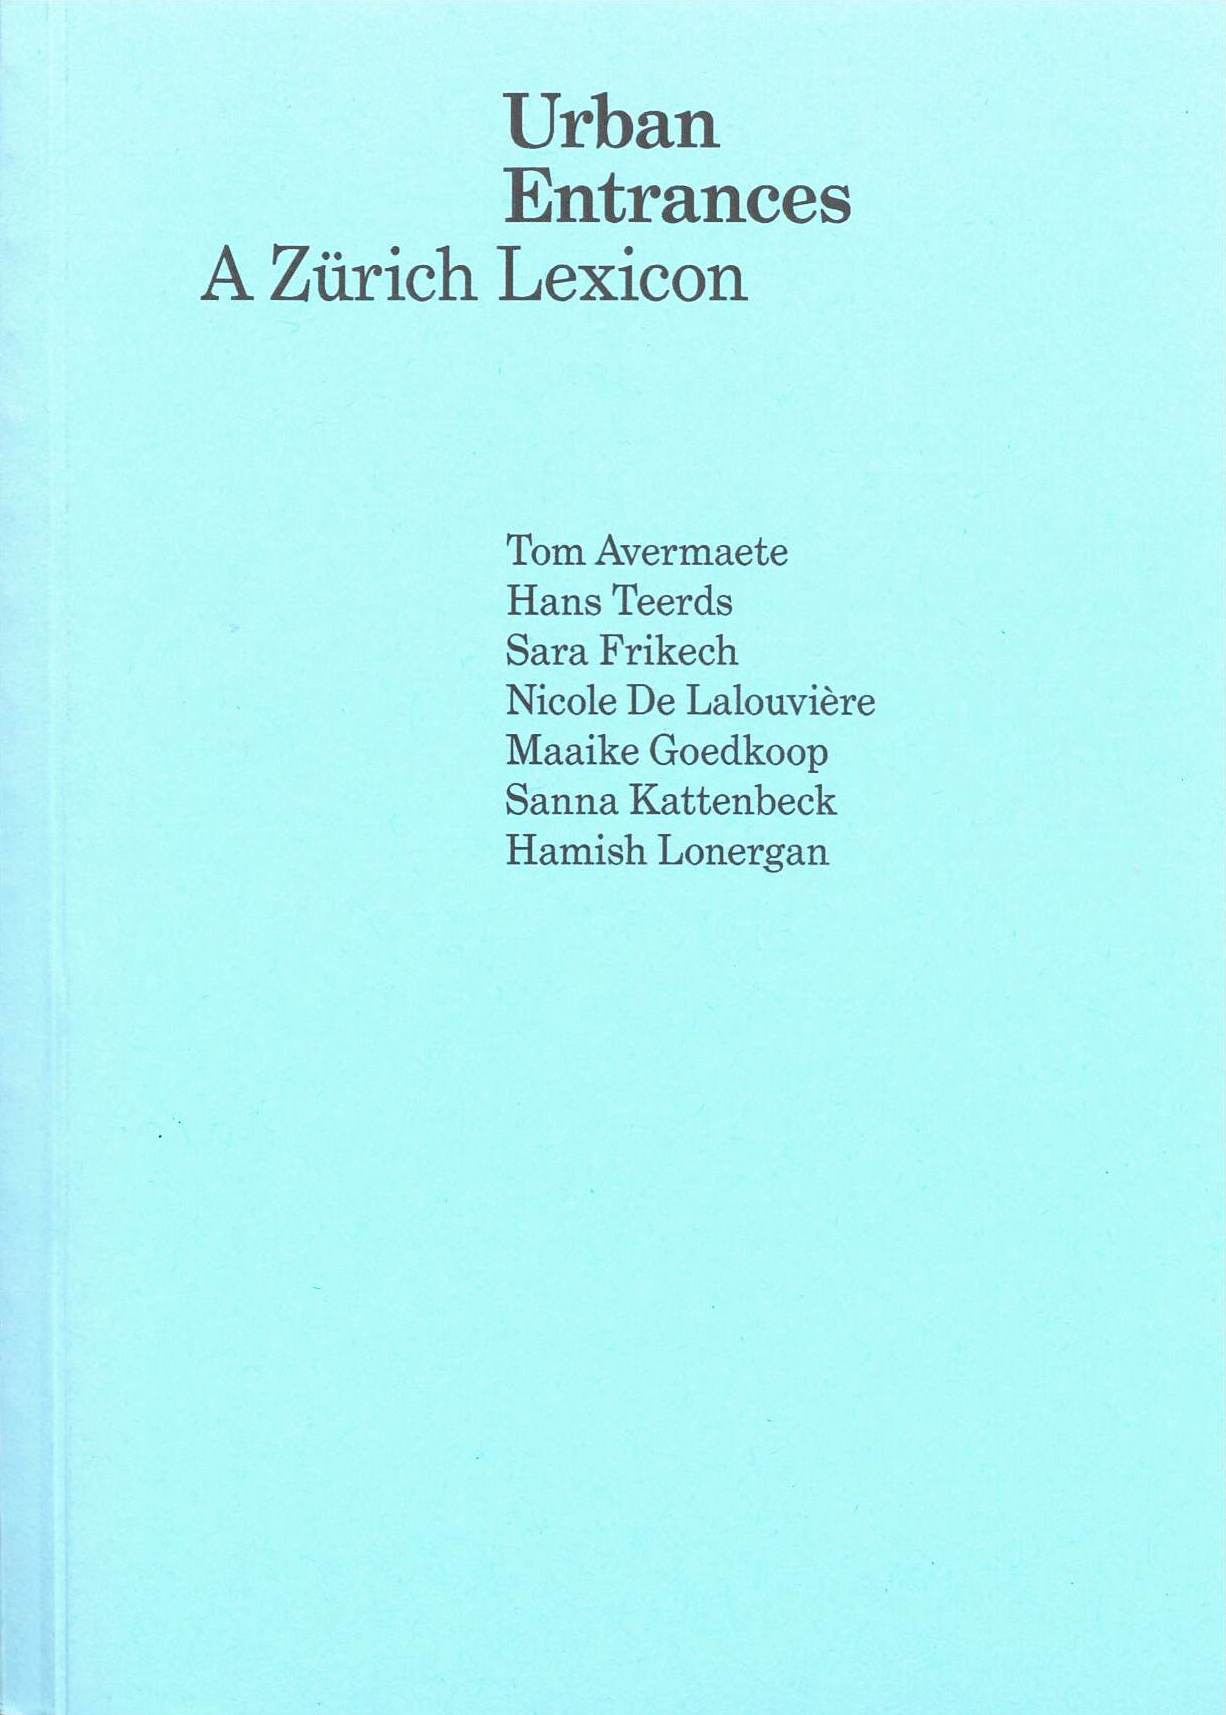 Urban Entrances - A Zürich Lexicon